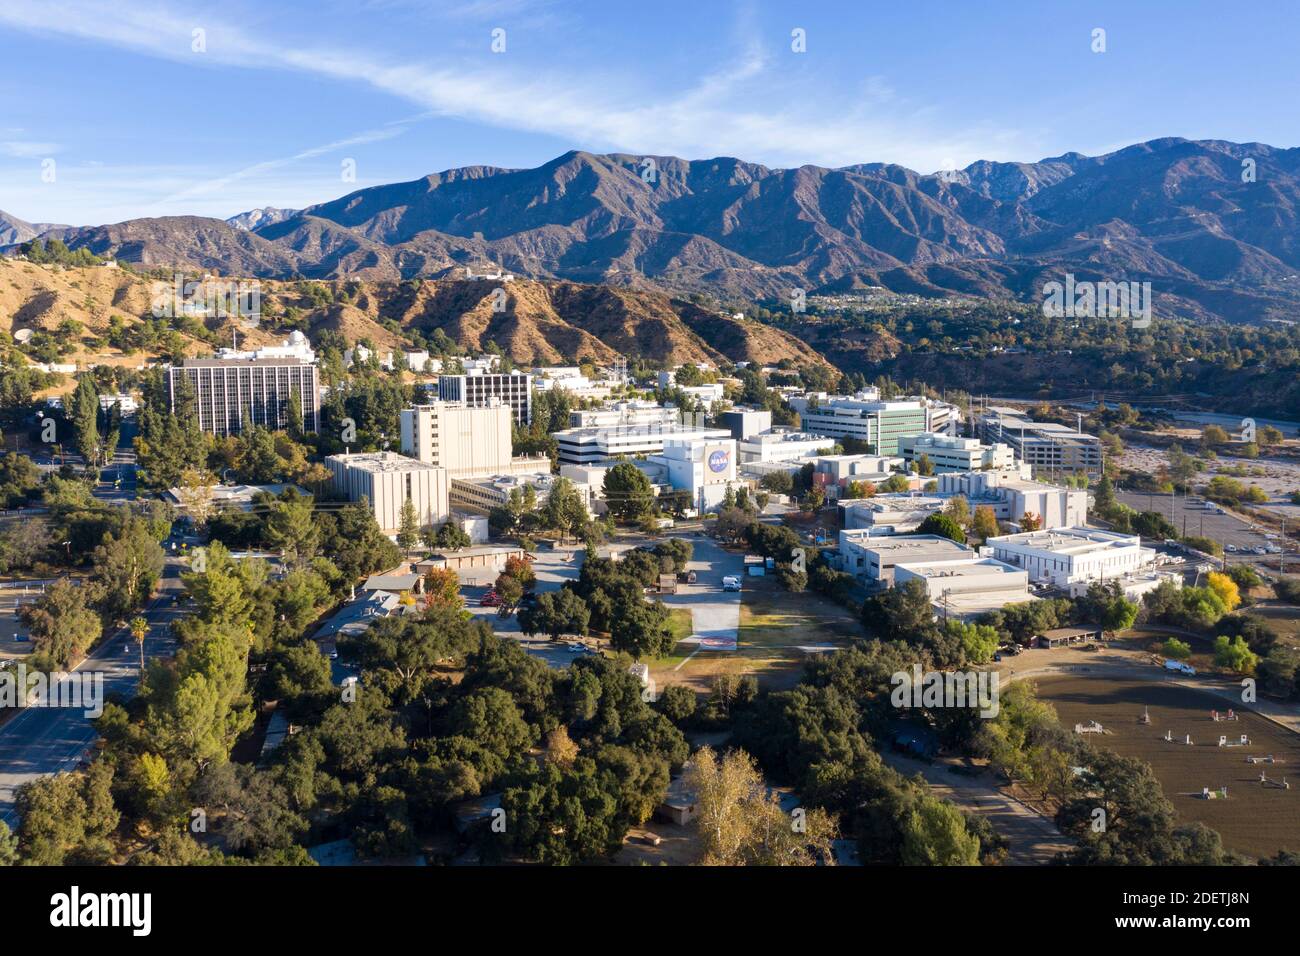 Vue aérienne de la NASA JPL, Jet propulsion Laboratory dans les contreforts au-dessus de Pasadena Californie (dans la Canada Flintridge) Banque D'Images